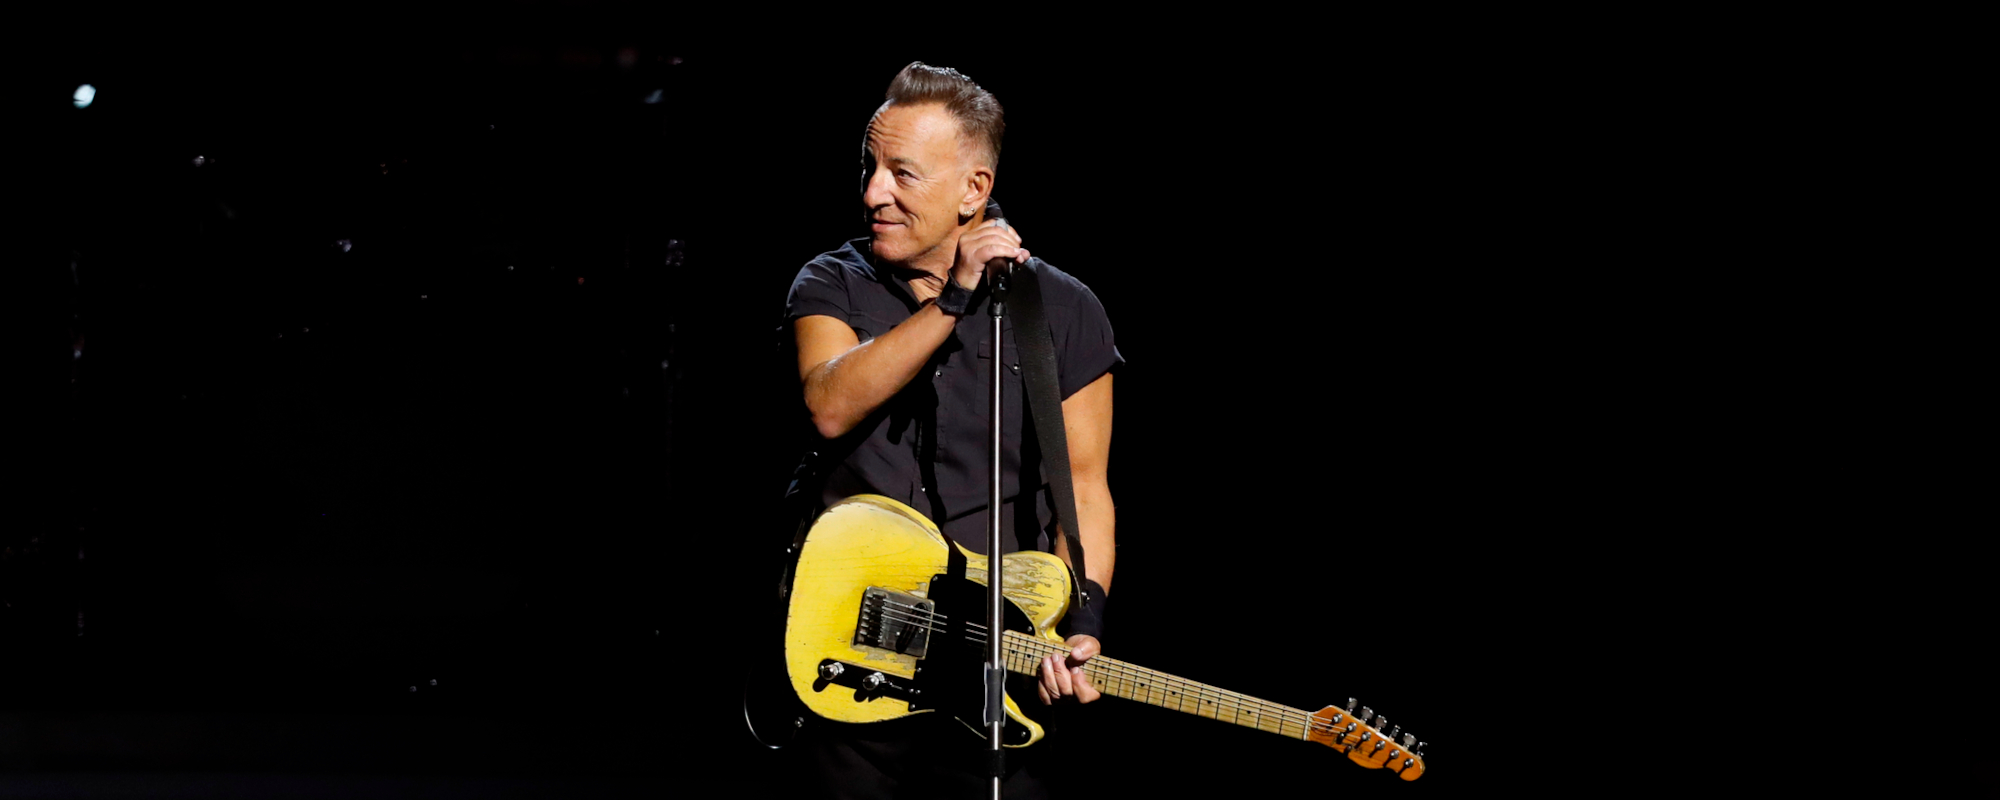 Bruce Springsteen frappe accidentellement Guitar Tech dans la tête avec une guitare